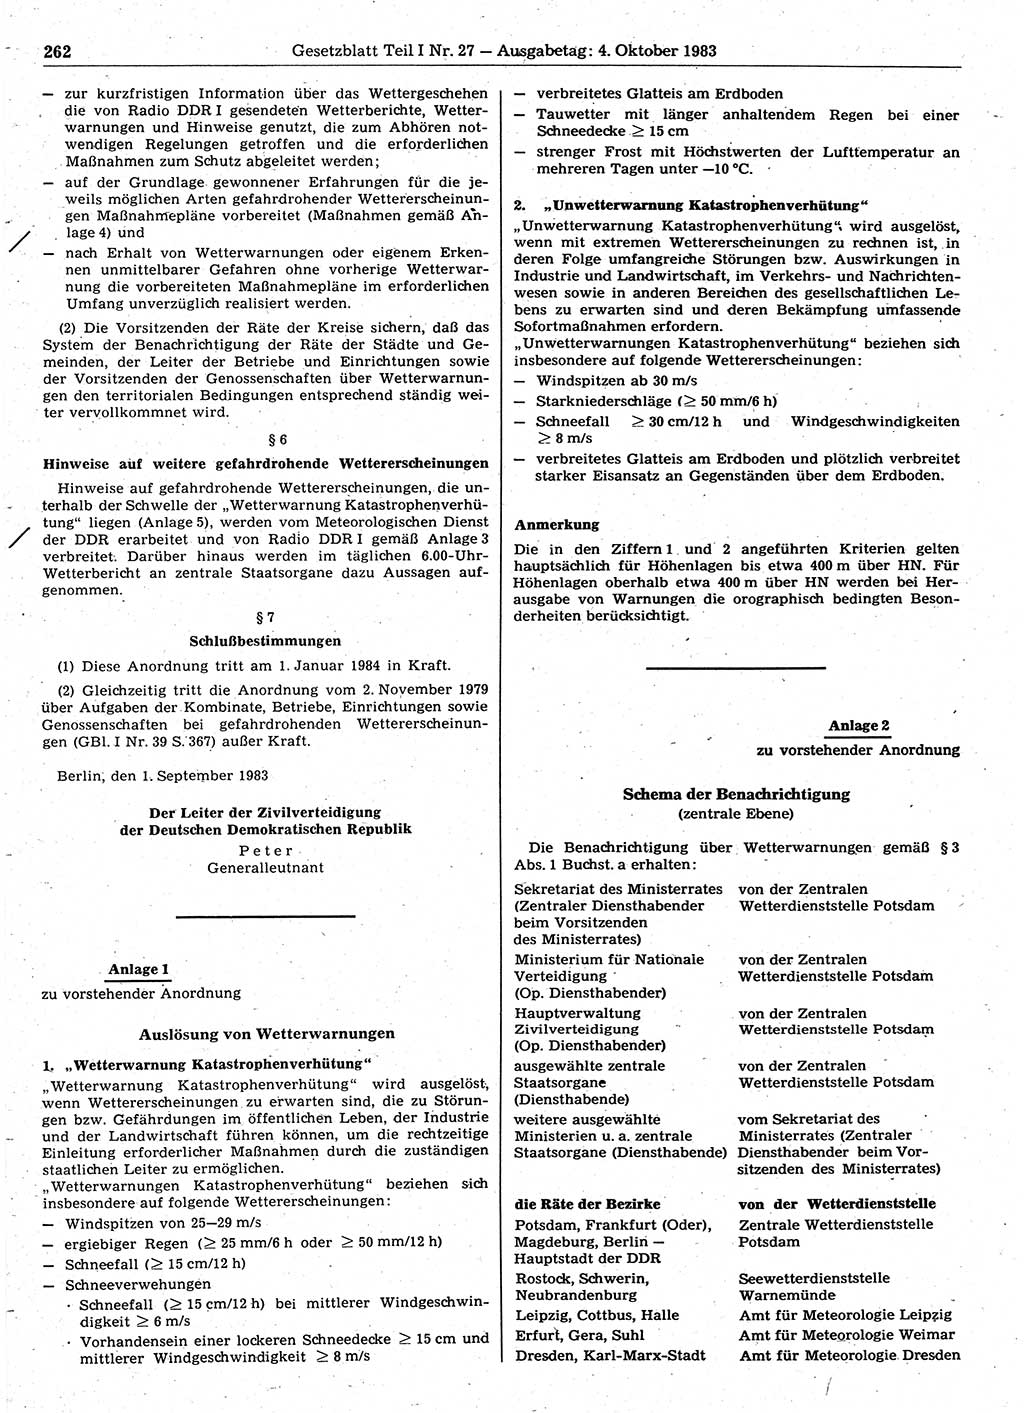 Gesetzblatt (GBl.) der Deutschen Demokratischen Republik (DDR) Teil Ⅰ 1983, Seite 262 (GBl. DDR Ⅰ 1983, S. 262)